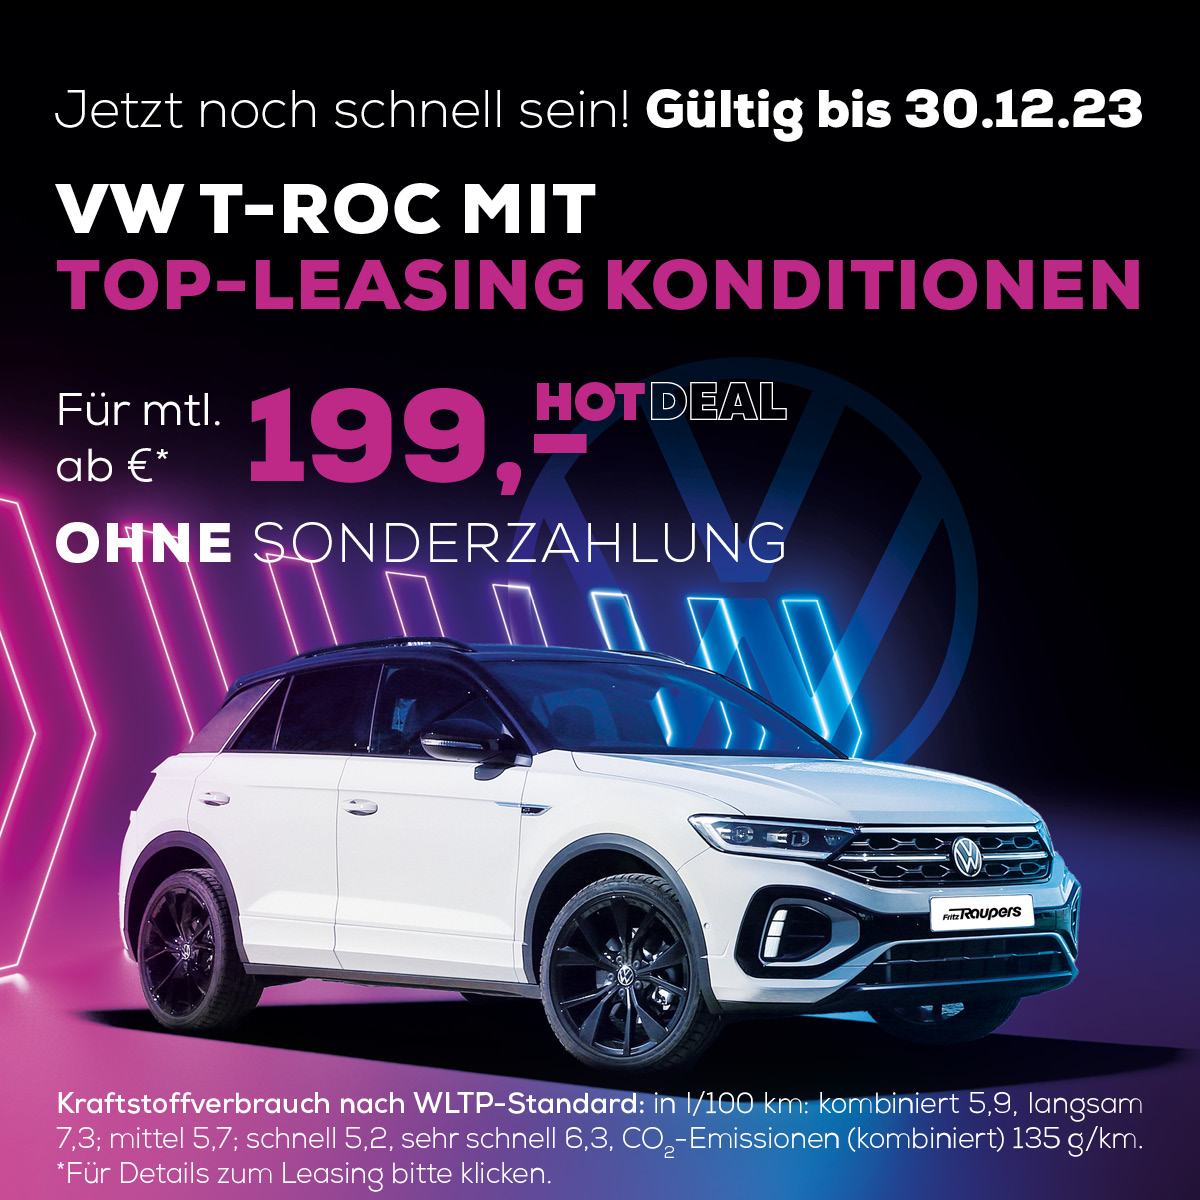 T-Roc mit Top-Leasing Konditionen Raupers in Hannover - Jetzt leasen und sofort im neuen Traum T-Roc durch die City oder übers Land cruisen!